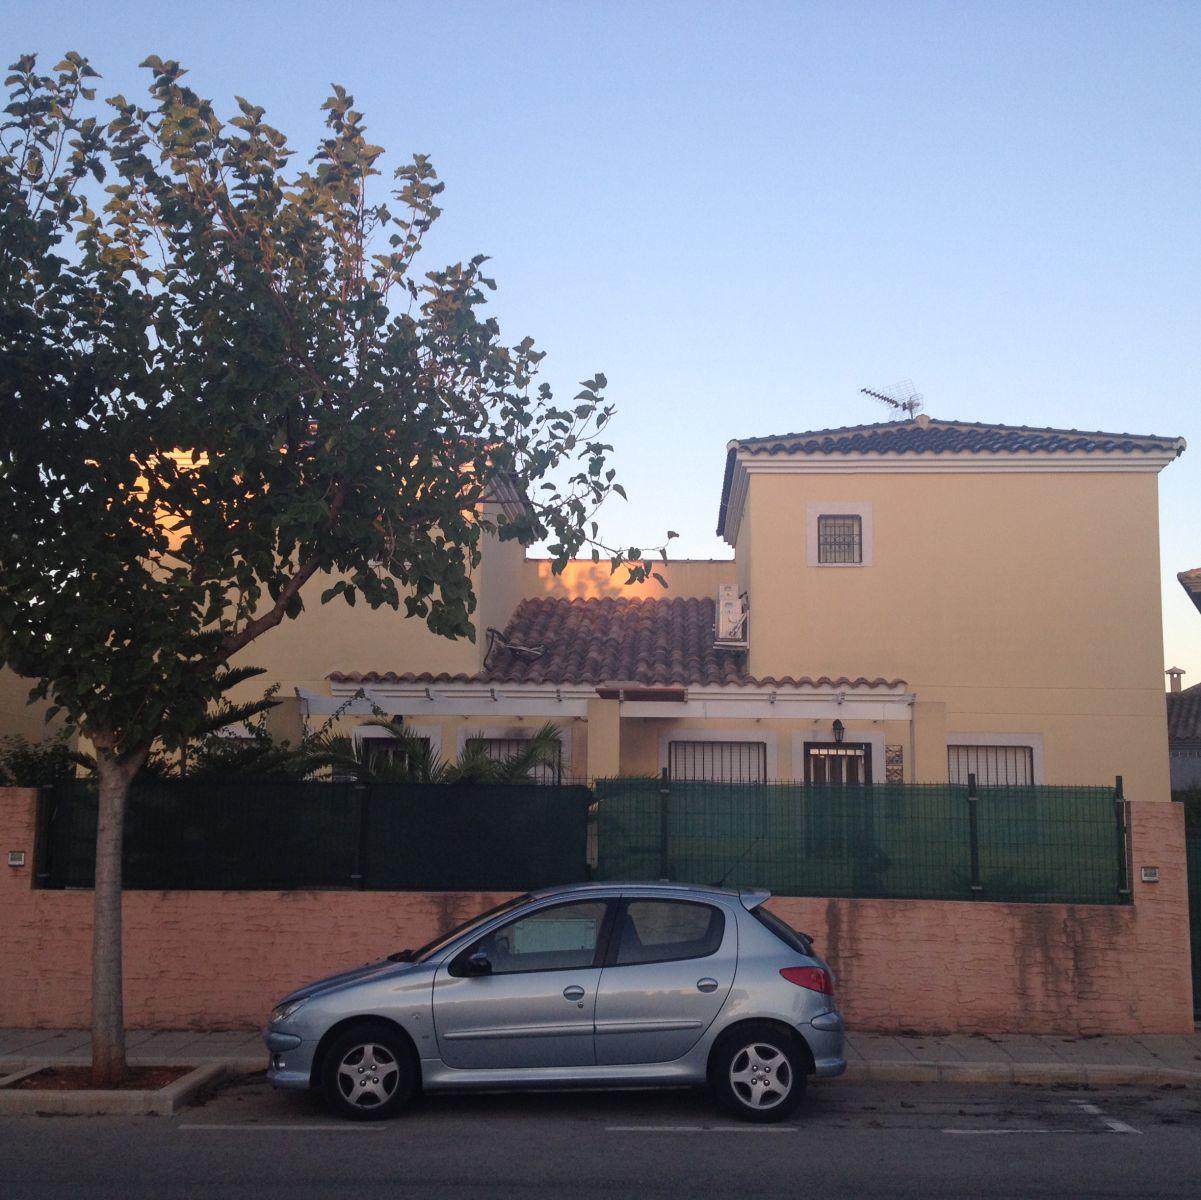 Casa Adosada unter Verkauf unter Boticari, Verger (El), Alicante